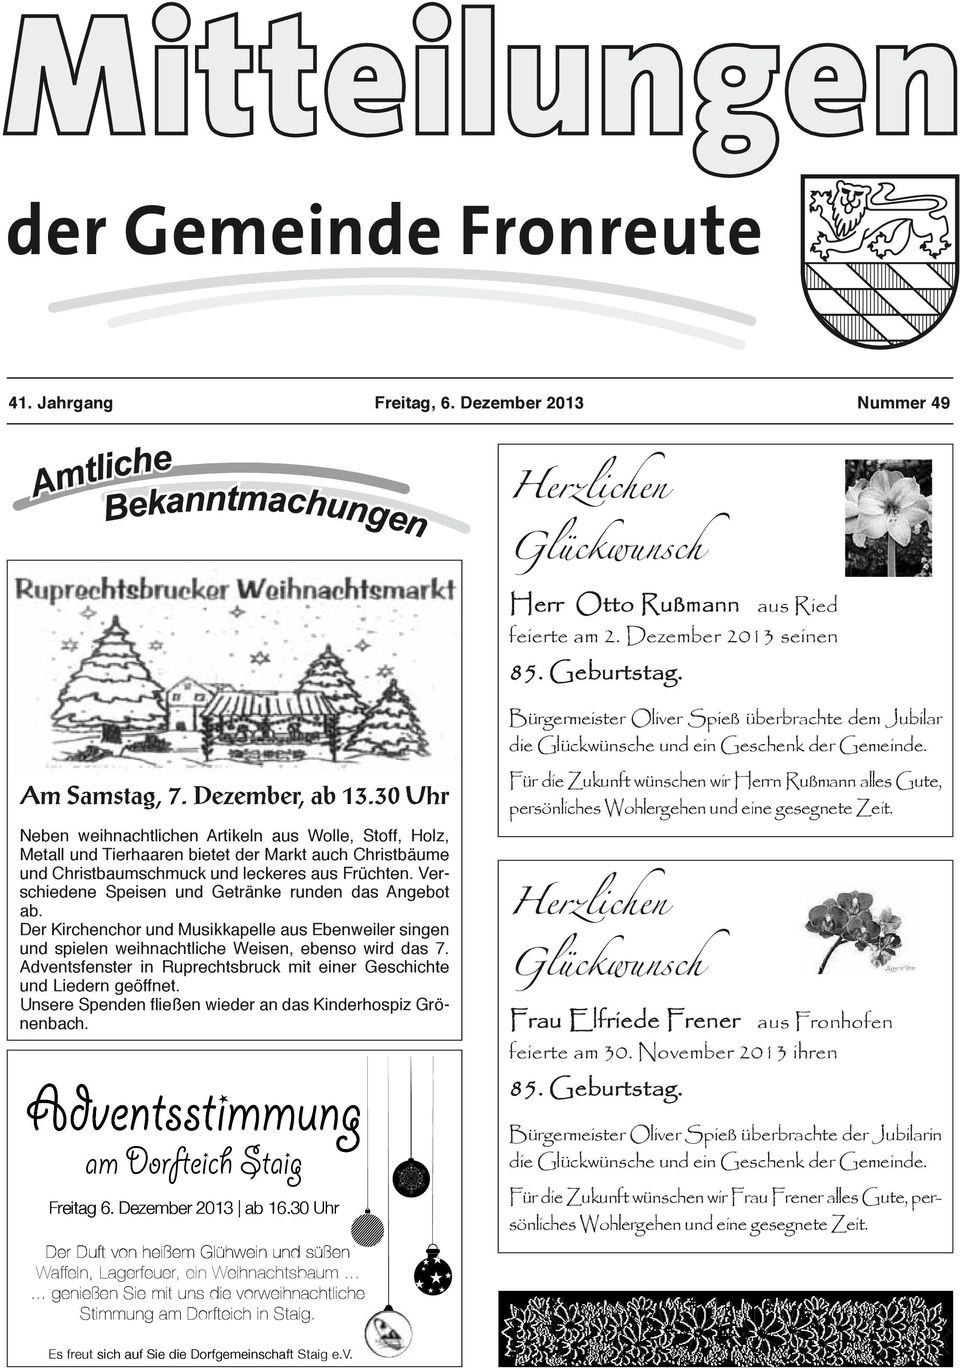 Verschiedene Speisen und Getränke runden das Angebot ab. Der Kirchenchor und Musikkapelle aus Ebenweiler singen und spielen weihnachtliche Weisen, ebenso wird das 7.